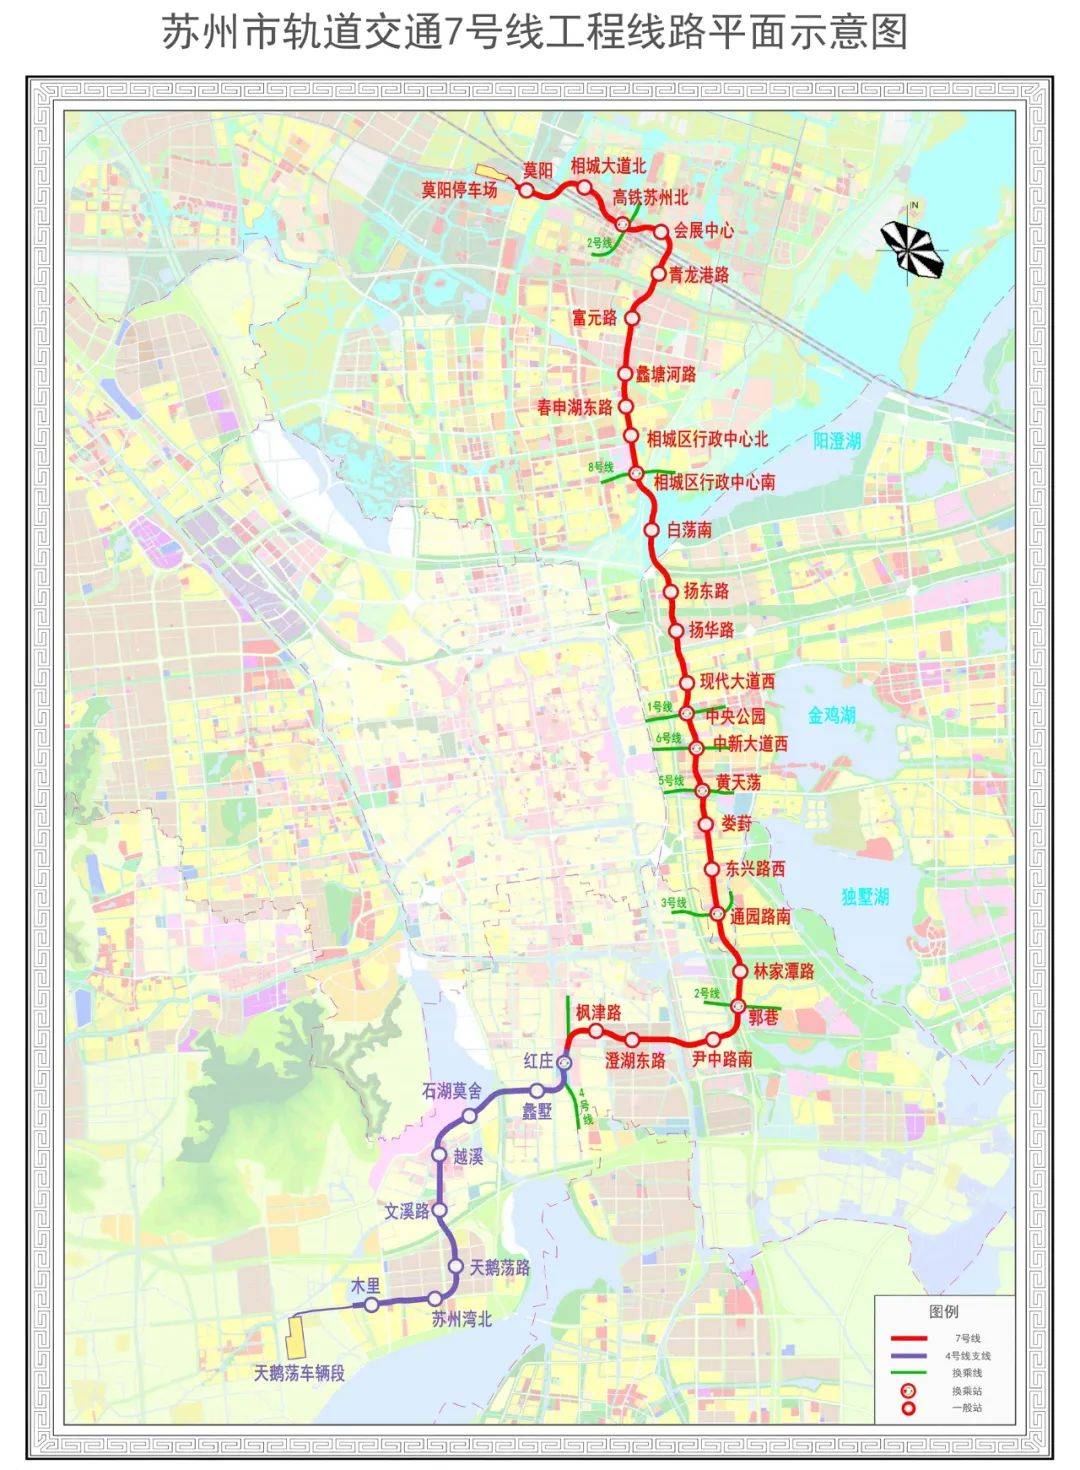 7号线线路图 图源:苏州轨道交通官网